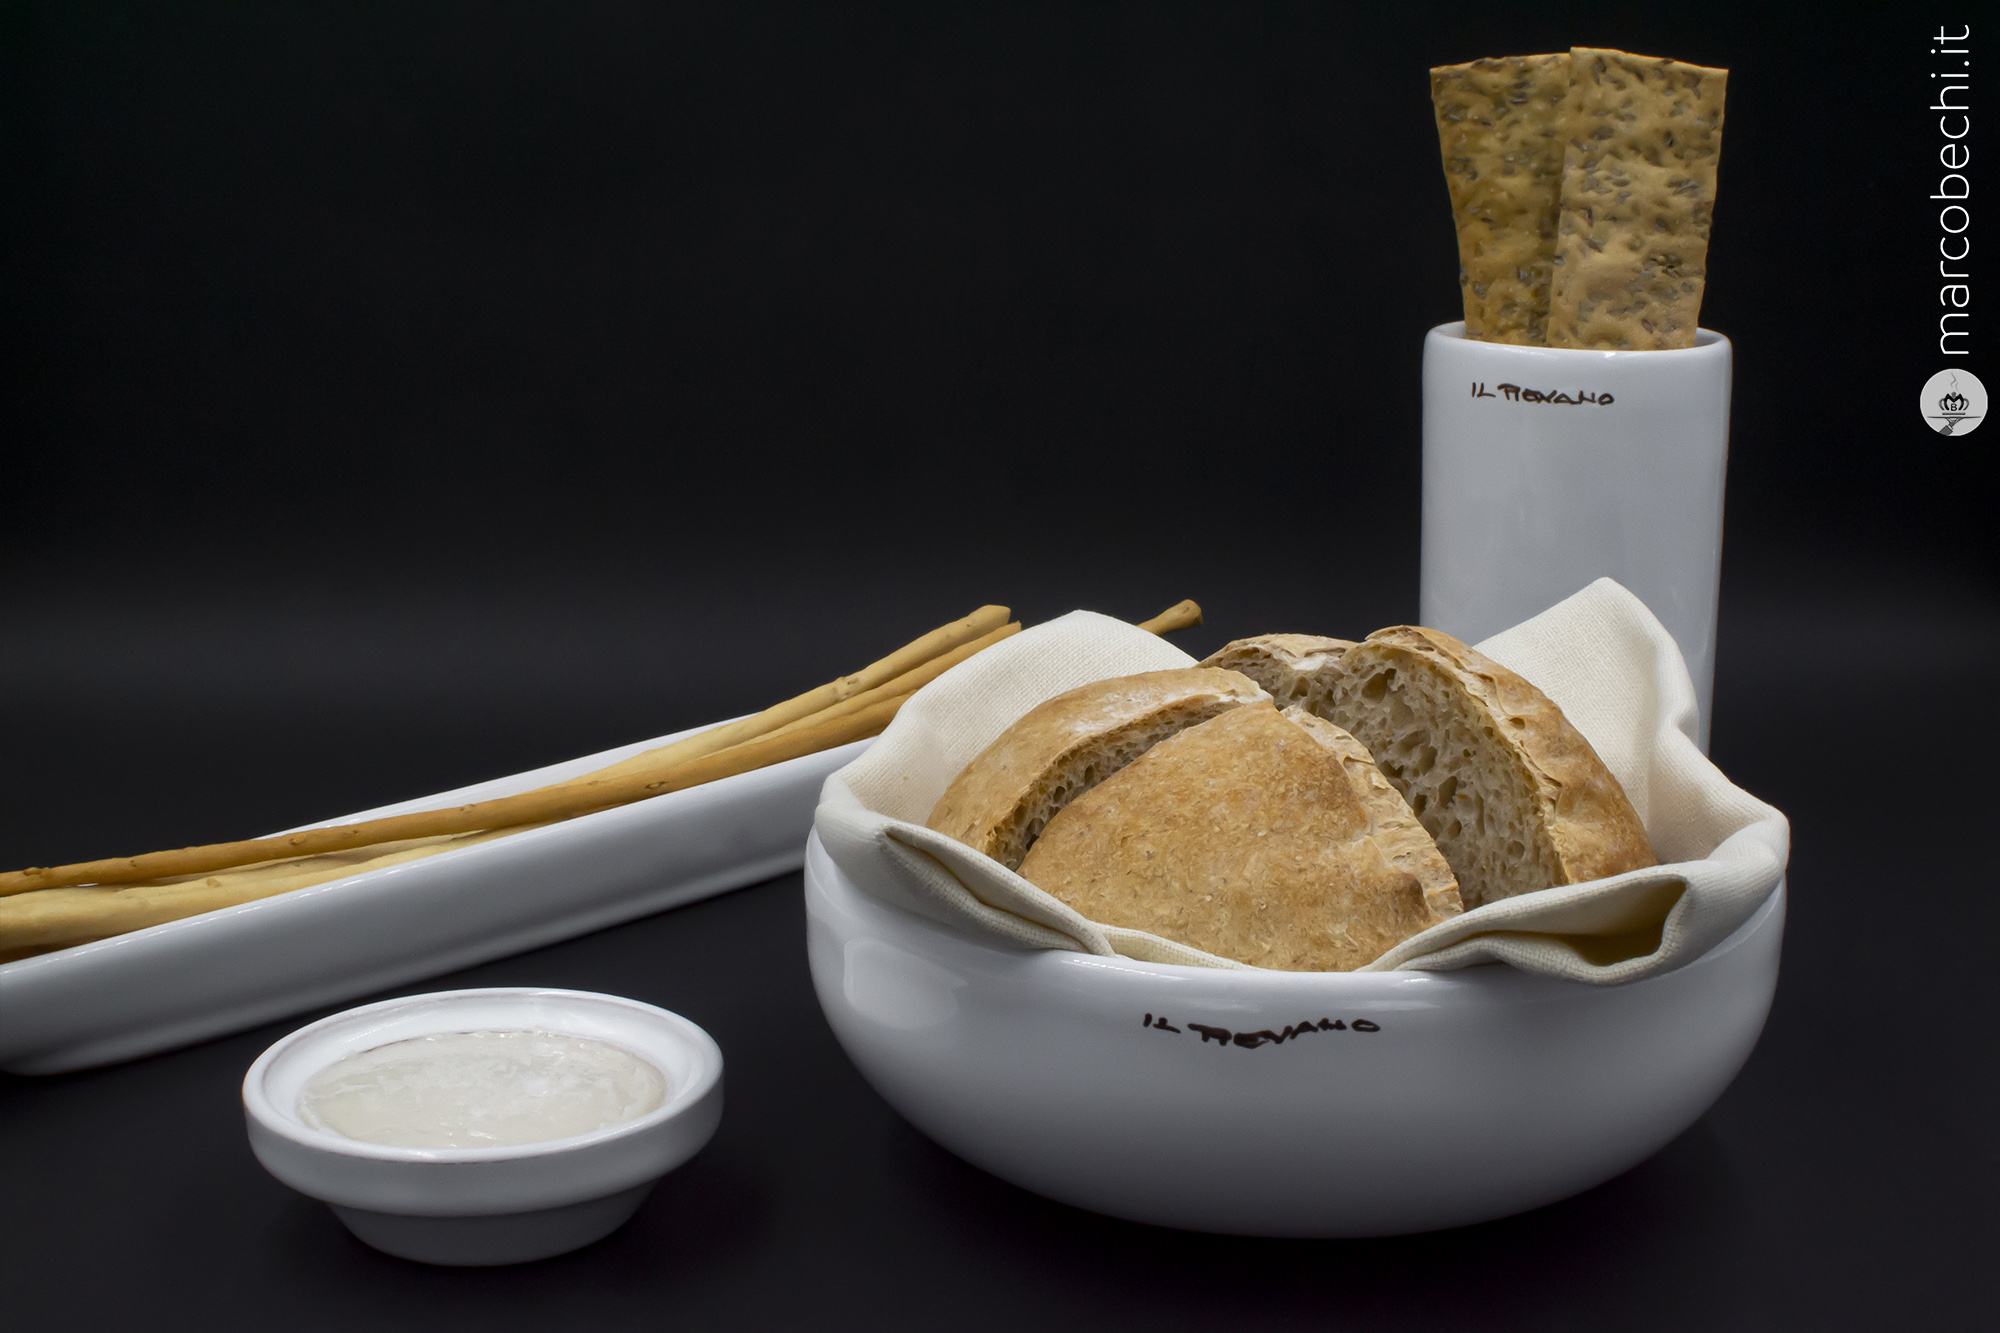 Il pane di Stelios Sakalis alla farina di verna BIO, grissini al sesamo e cracker di segale al cumino con lardo aromatizzato